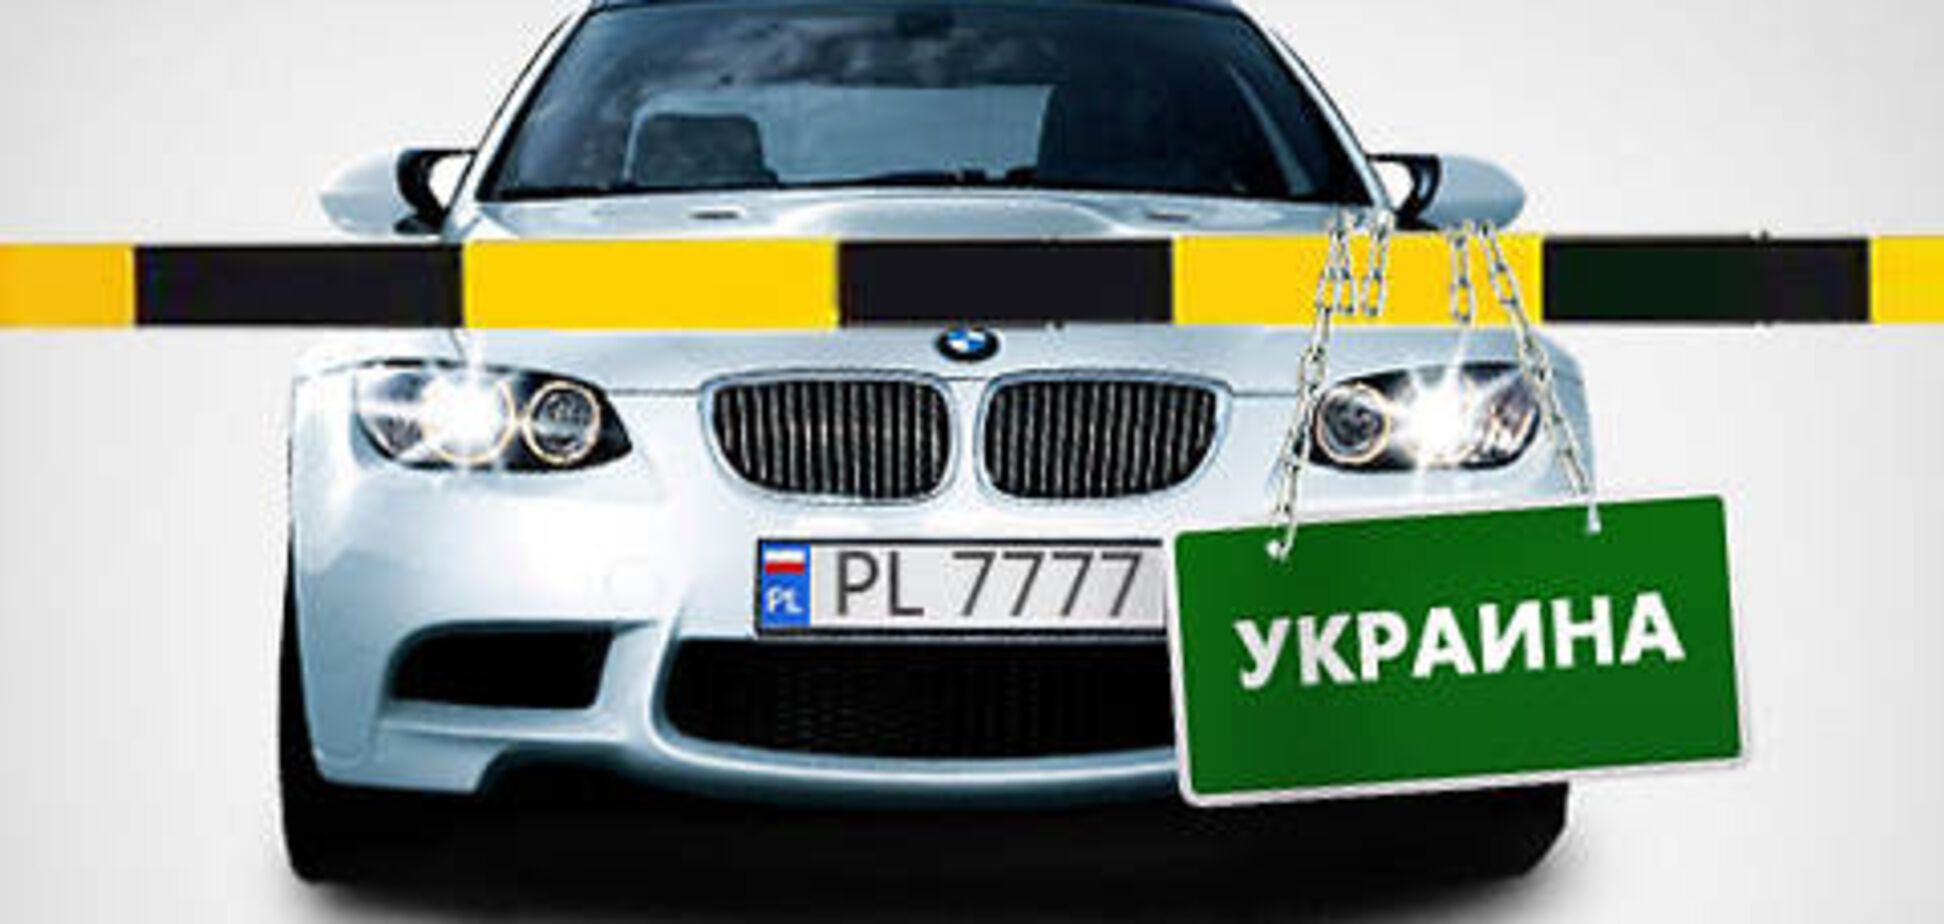 Украинцы не могут сами завезти авто-бляху. Это бизнес 'под крышей' властьимущих